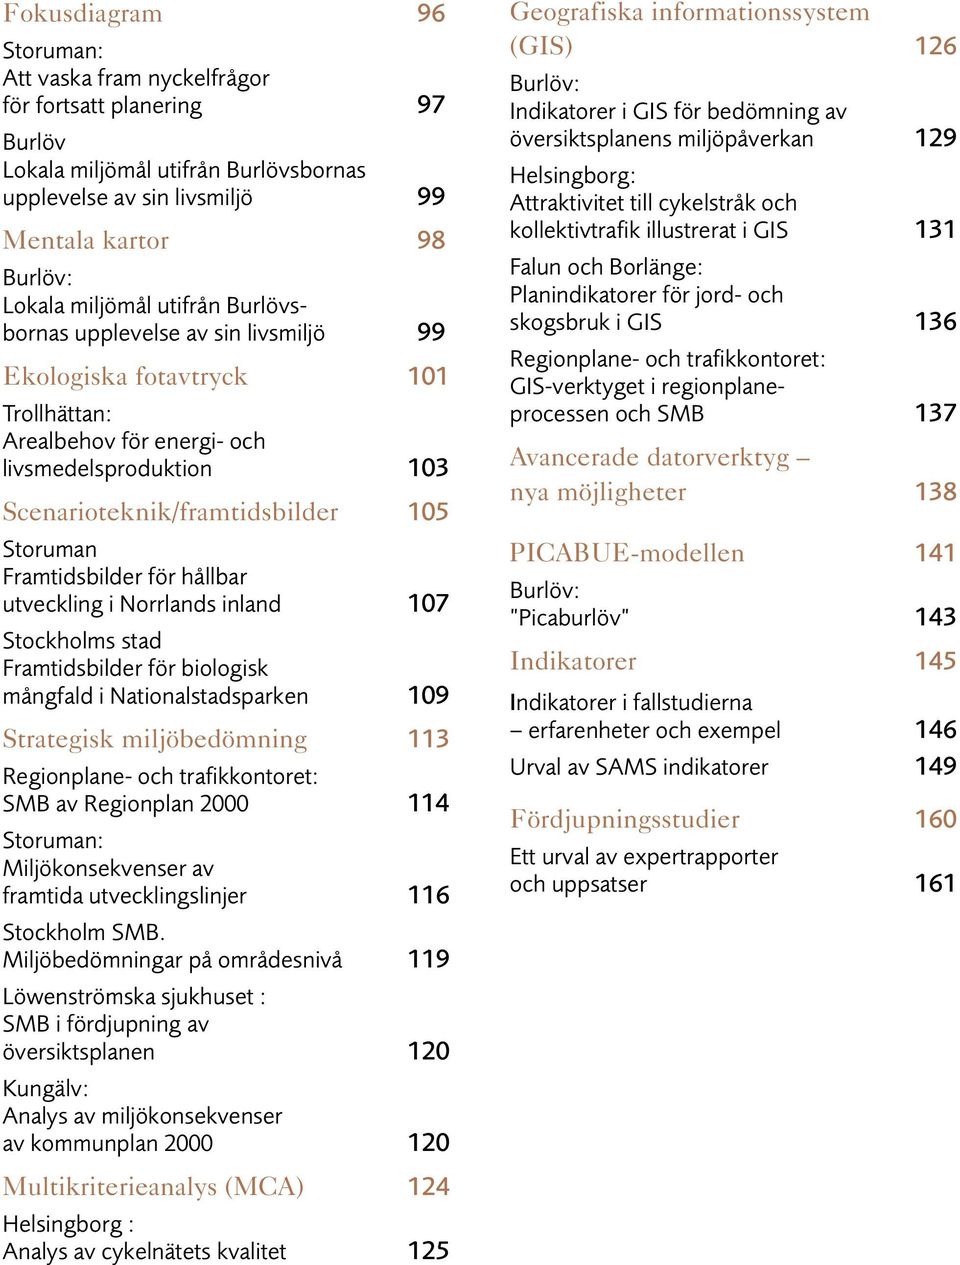 Framtidsbilder för hållbar utveckling i Norrlands inland 107 Stockholms stad Framtidsbilder för biologisk mångfald i Nationalstadsparken 109 Strategisk miljöbedömning 113 Regionplane- och